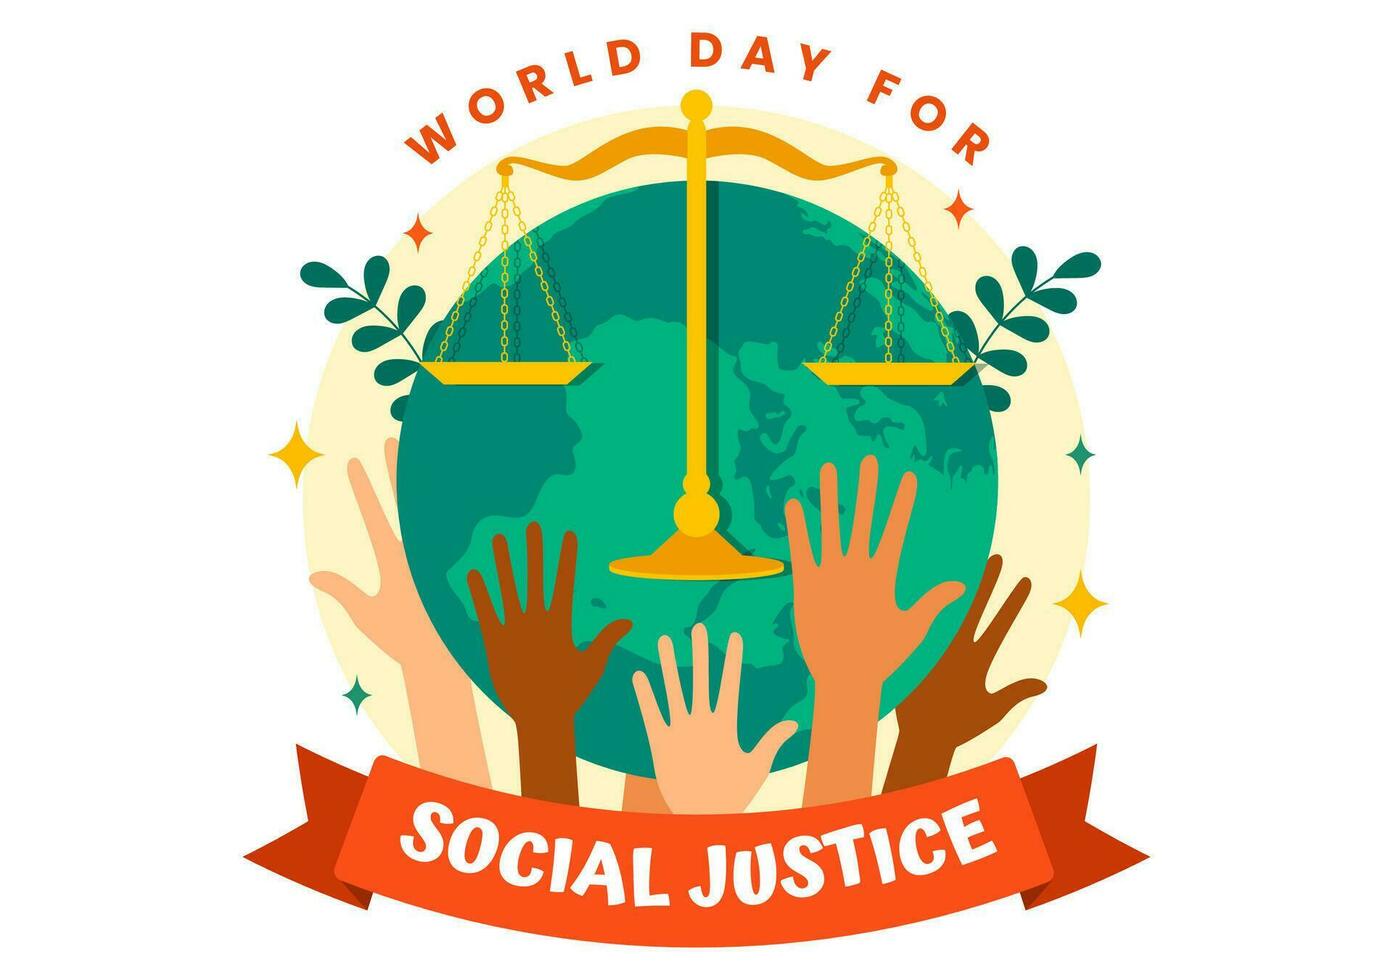 mundo día de social justicia vector ilustración en febrero 20 con escamas o martillo para un sólo relación y injusticia proteccion en antecedentes